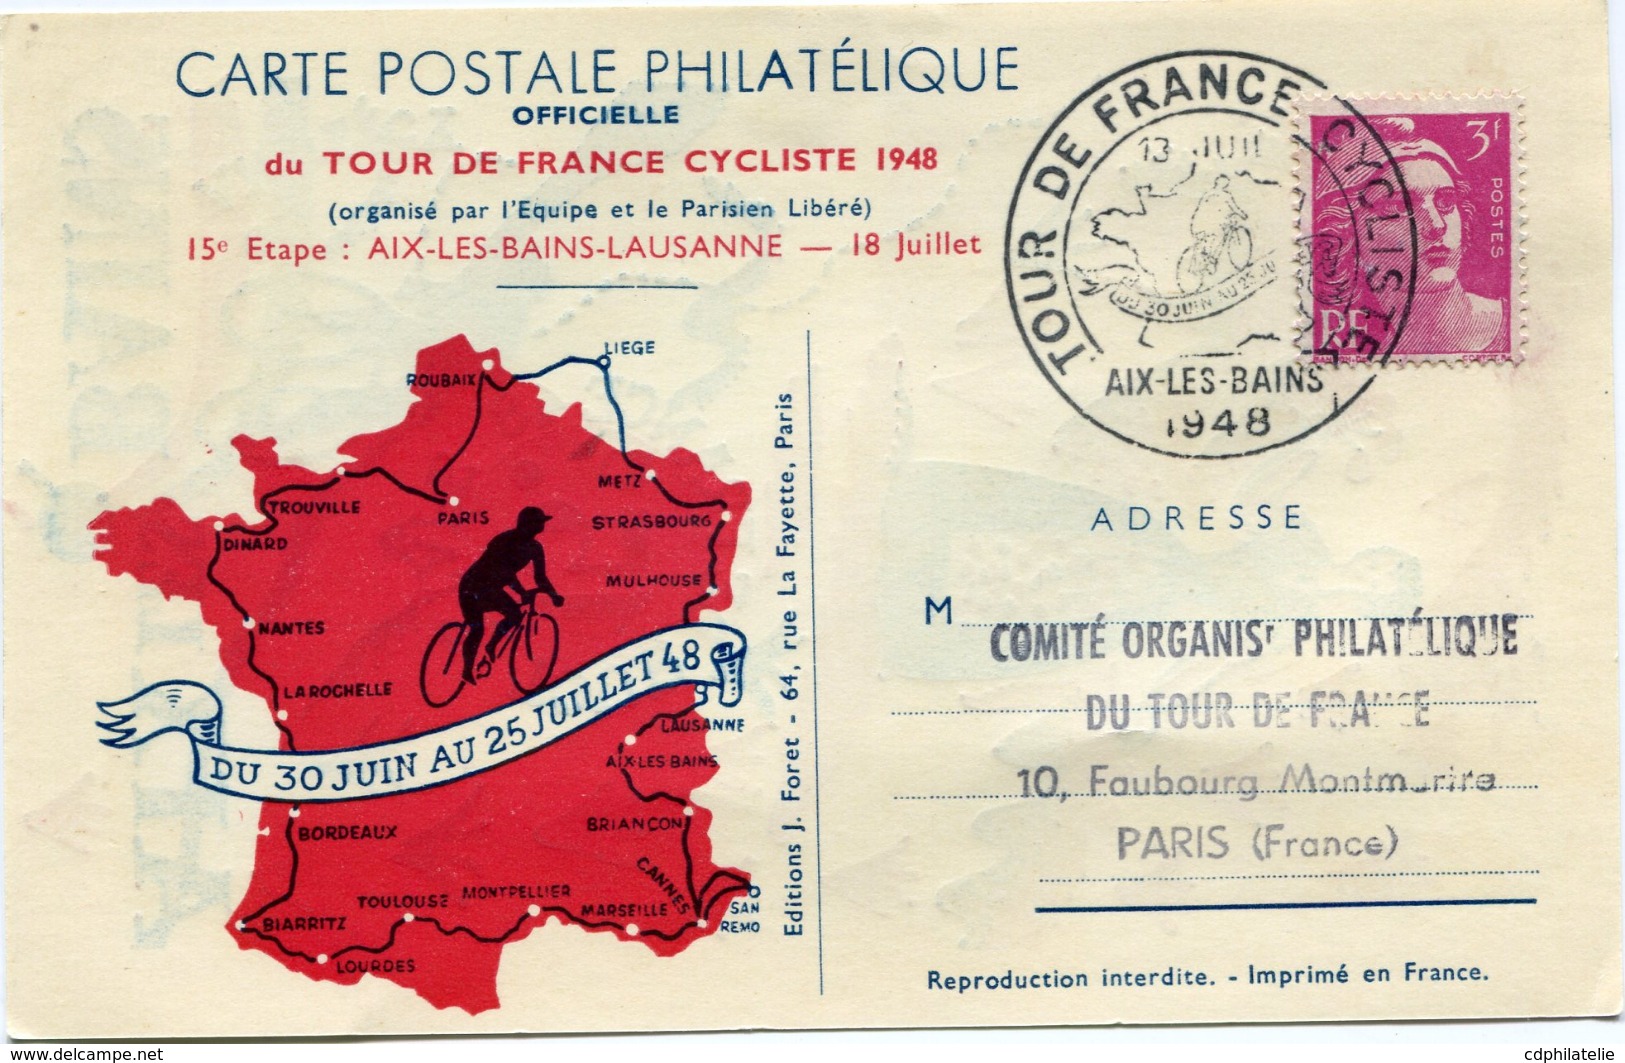 FRANCE CARTE POSTALE DU TOUR DE FRANCE 48 15e ETAPE AVEC VIGNETTE AIX-LES-BAINS + OBL. ILLUSTREE TOUR DE...18 JUIL. 1948 - Cyclisme